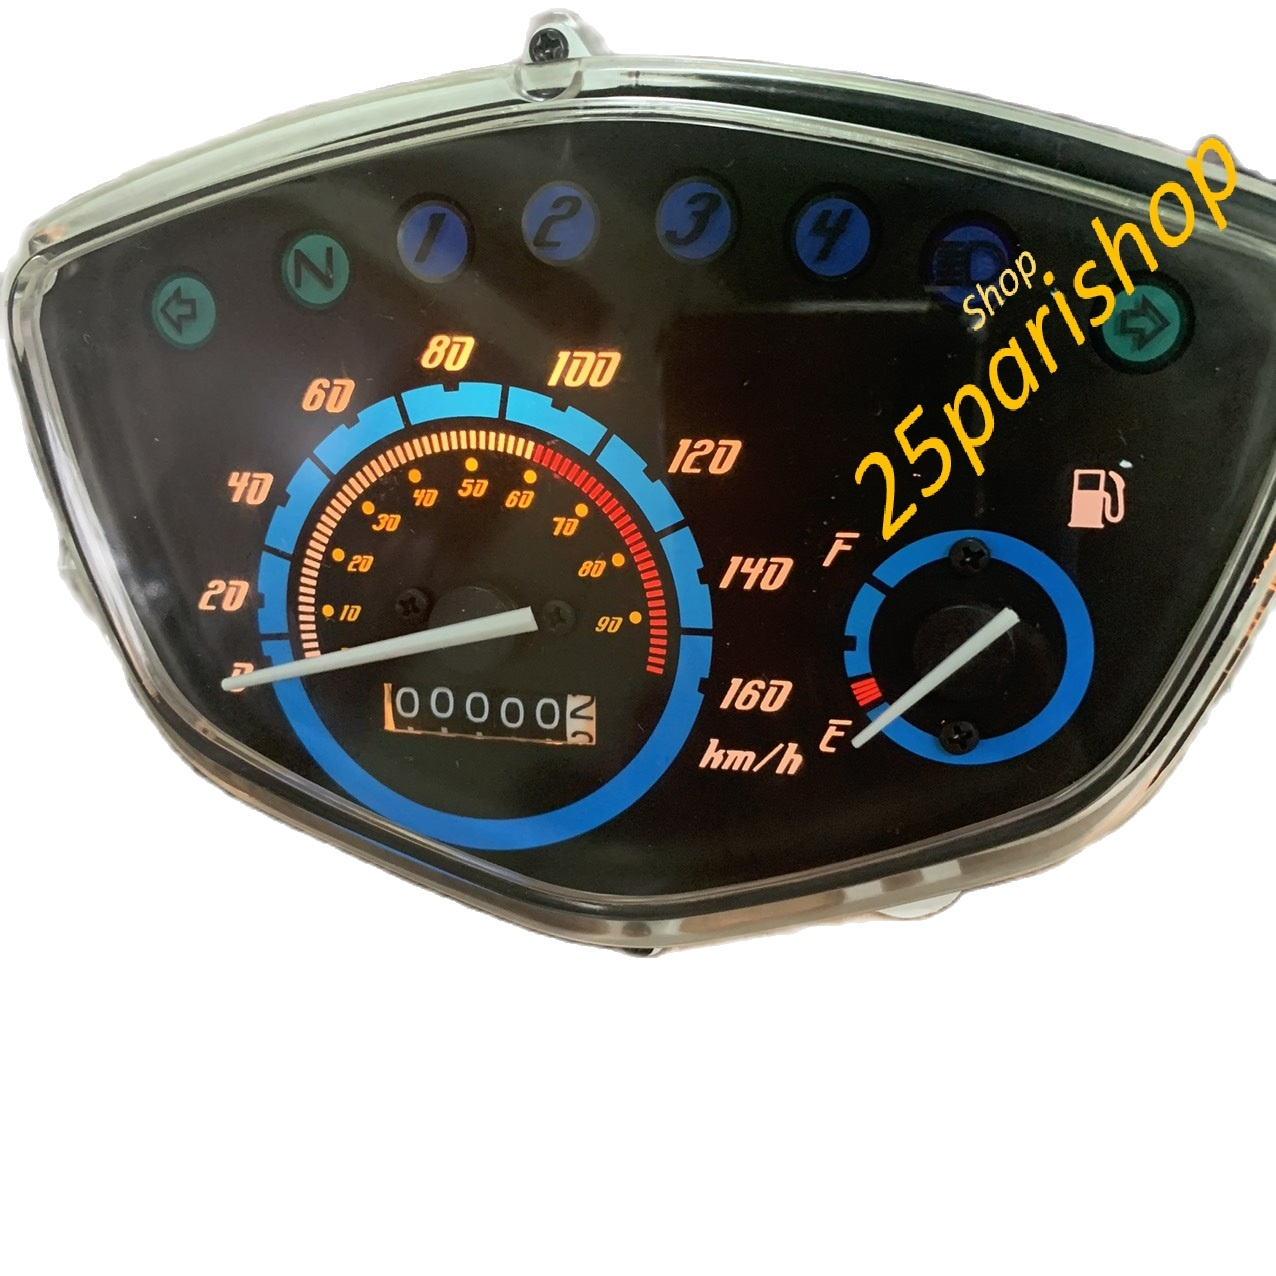 Đồng hồ điện tử Sirius  Ex10   Báo xăng chính xác  Báo tốc độ chuẩn   Lắp đặt như zin  Nền led 7 màu  Đồng hồ sirius 